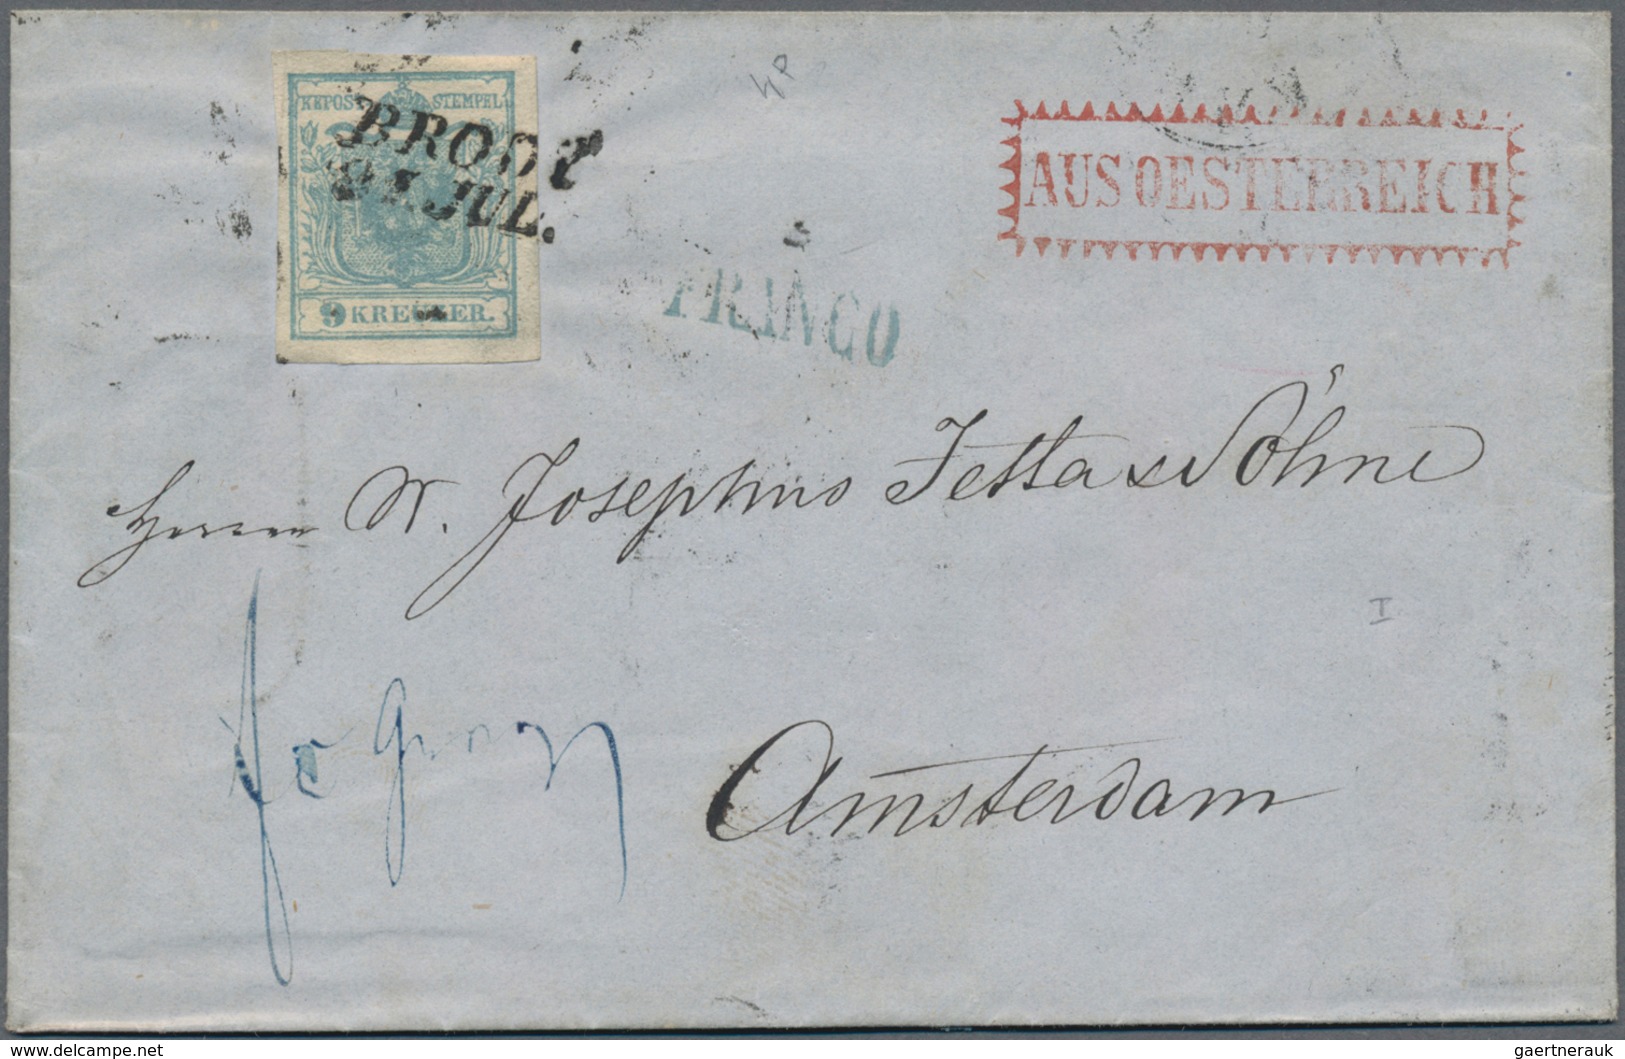 Österreich: 1853/1858, Partie von 19 Briefhüllen mit Frankaturen der ersten Ausgabe, dabei nette Ste